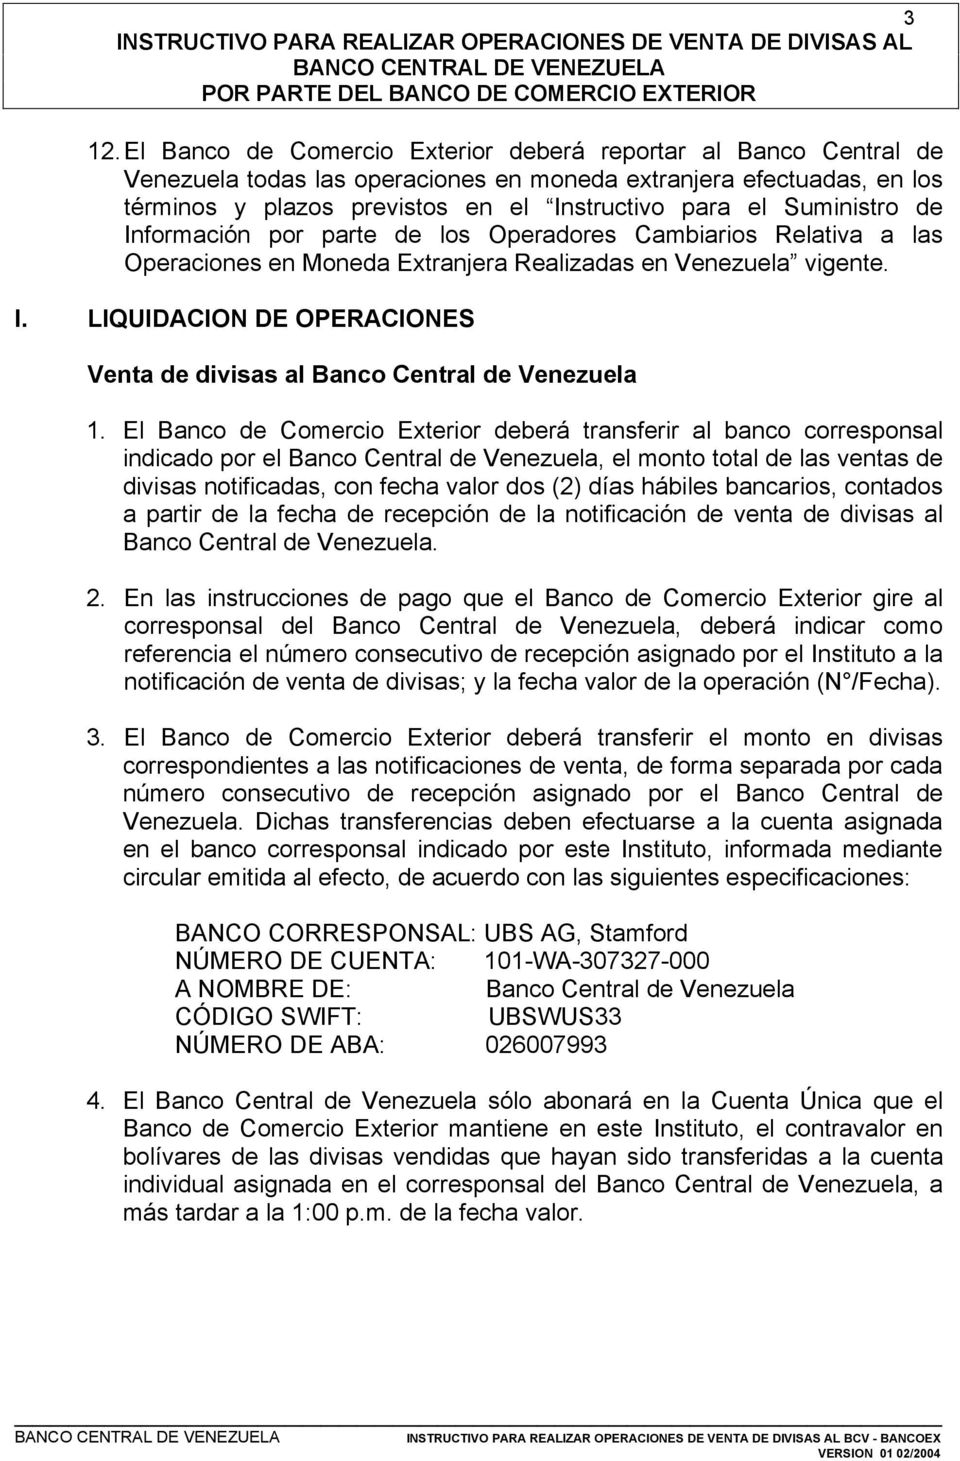 El Banco de Comercio Exterior deberá transferir al banco corresponsal indicado por el Banco Central de Venezuela, el monto total de las ventas de divisas notificadas, con fecha valor dos (2) días